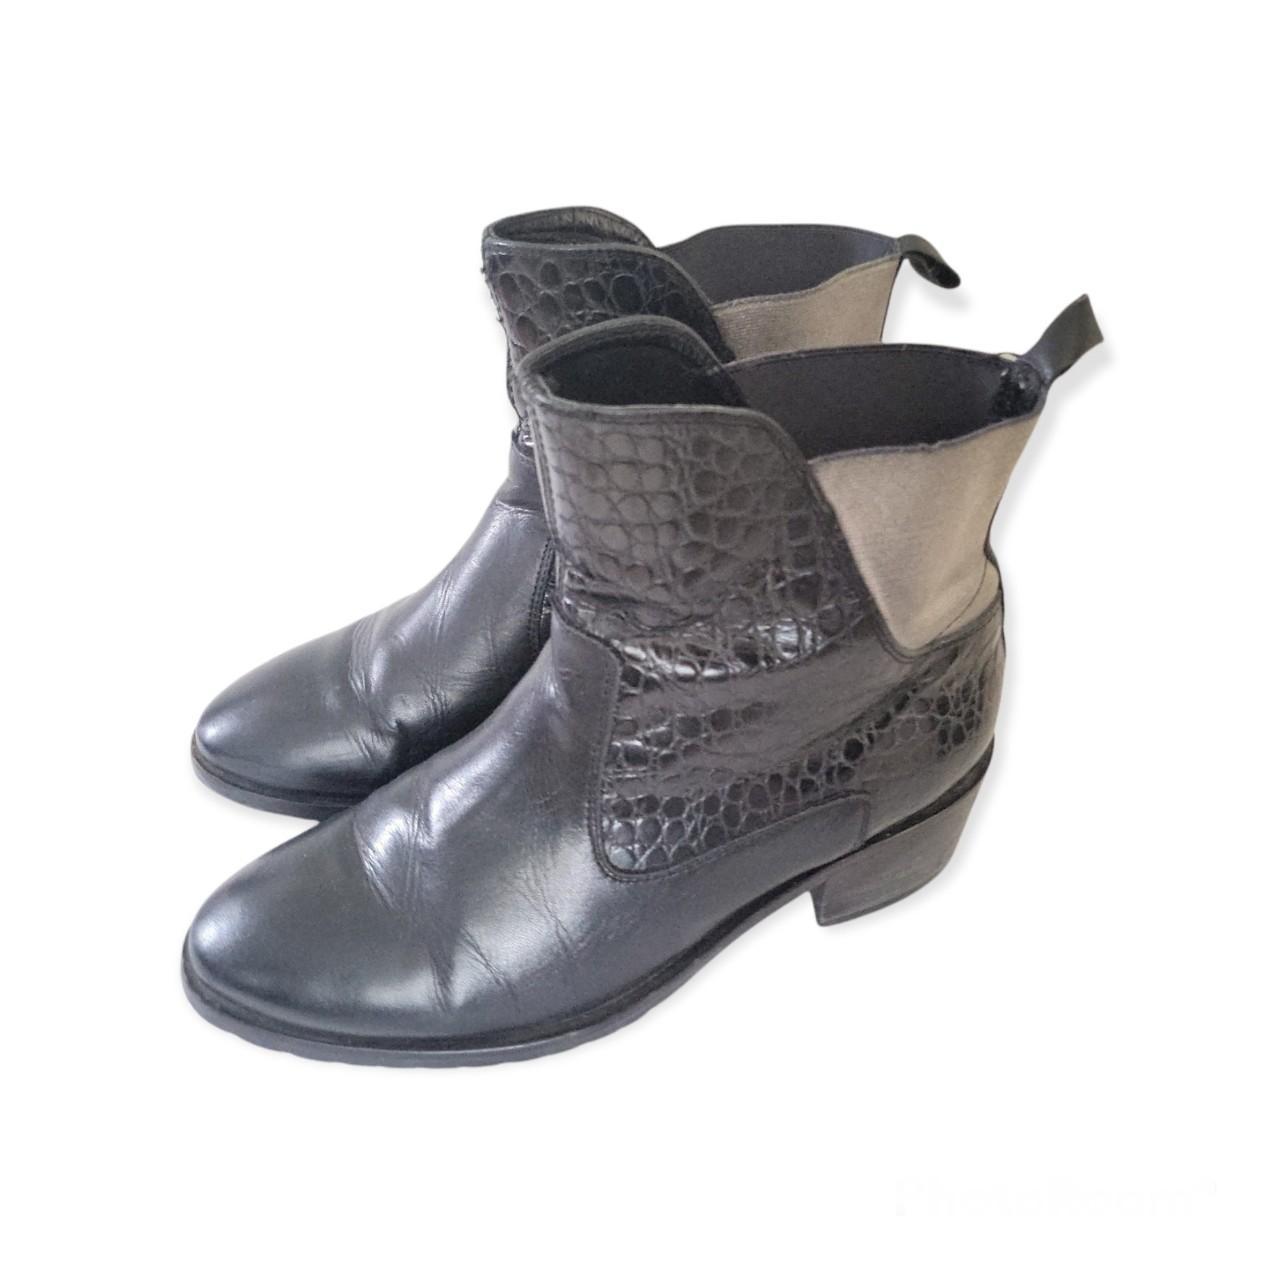 Bertie Women's Black and Grey Boots